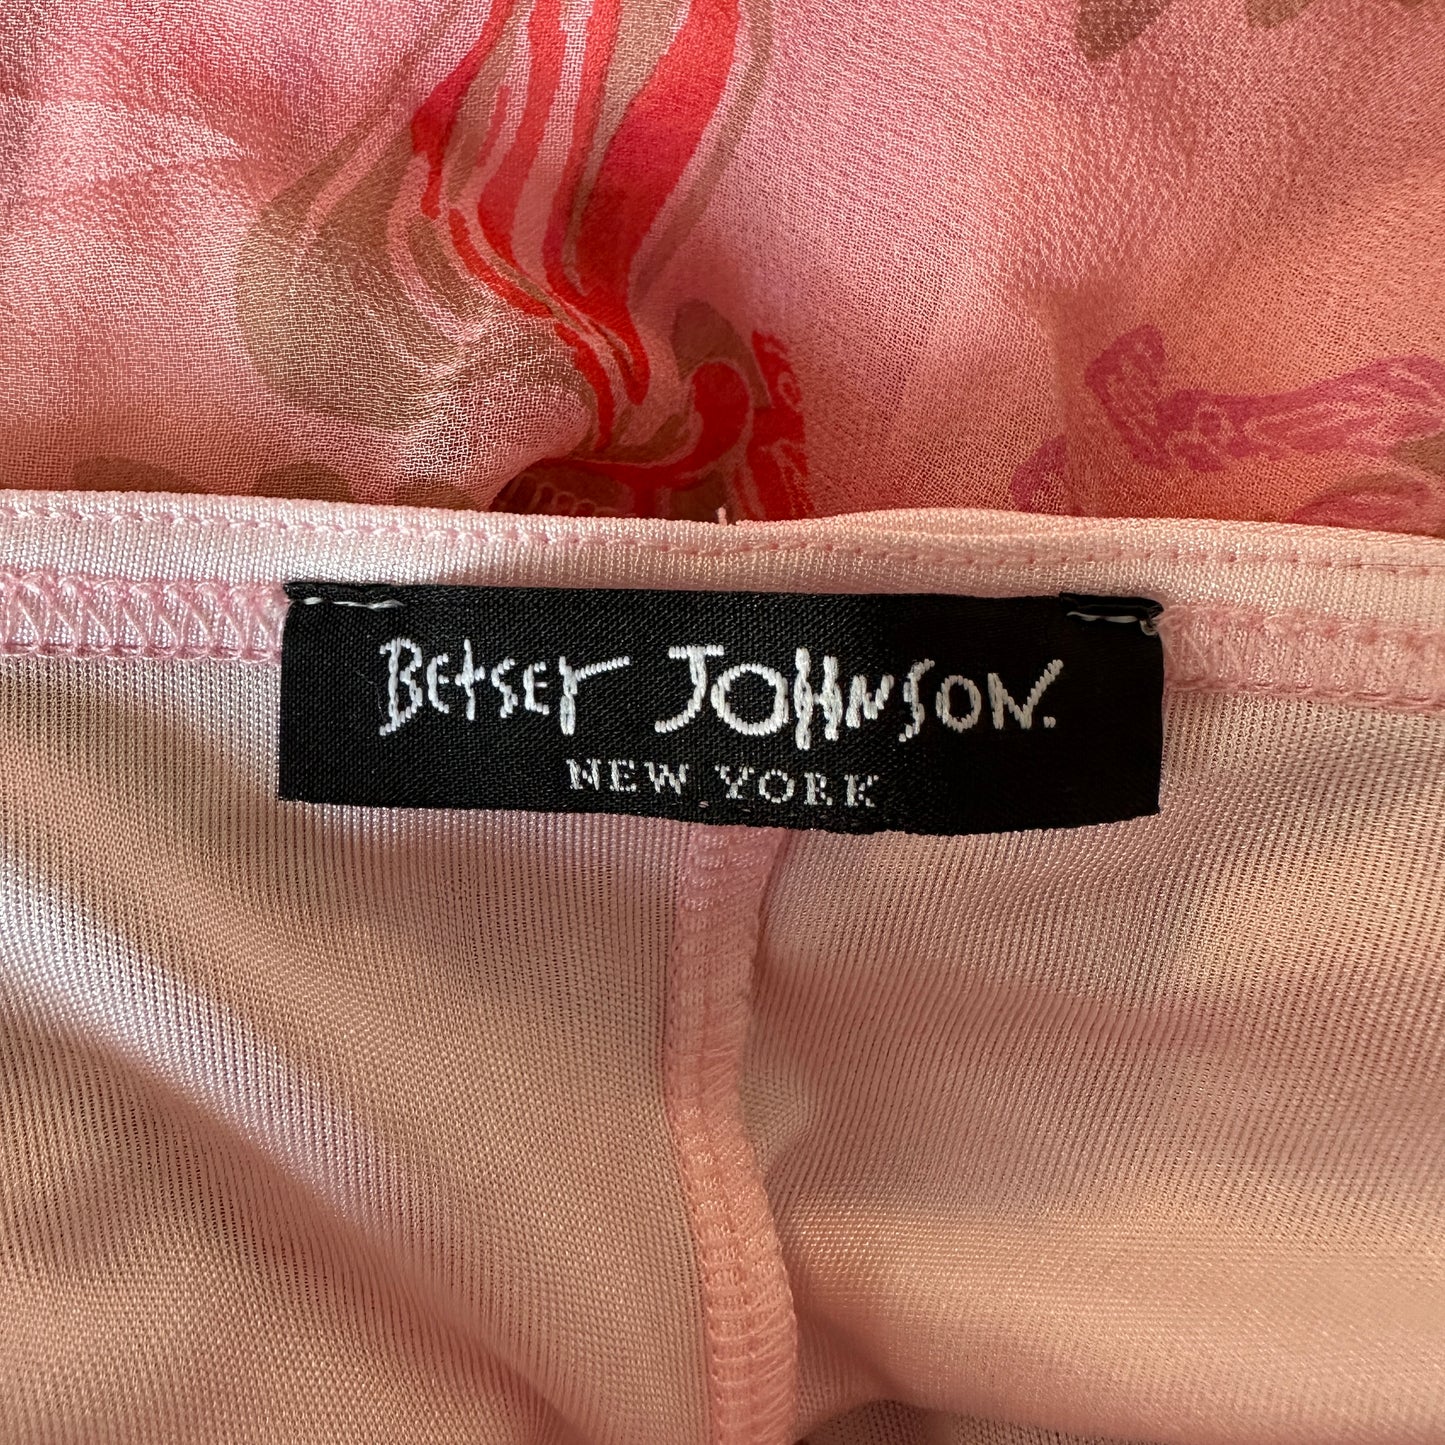 Betsey Johnson Floral Silk Chiffon Dress